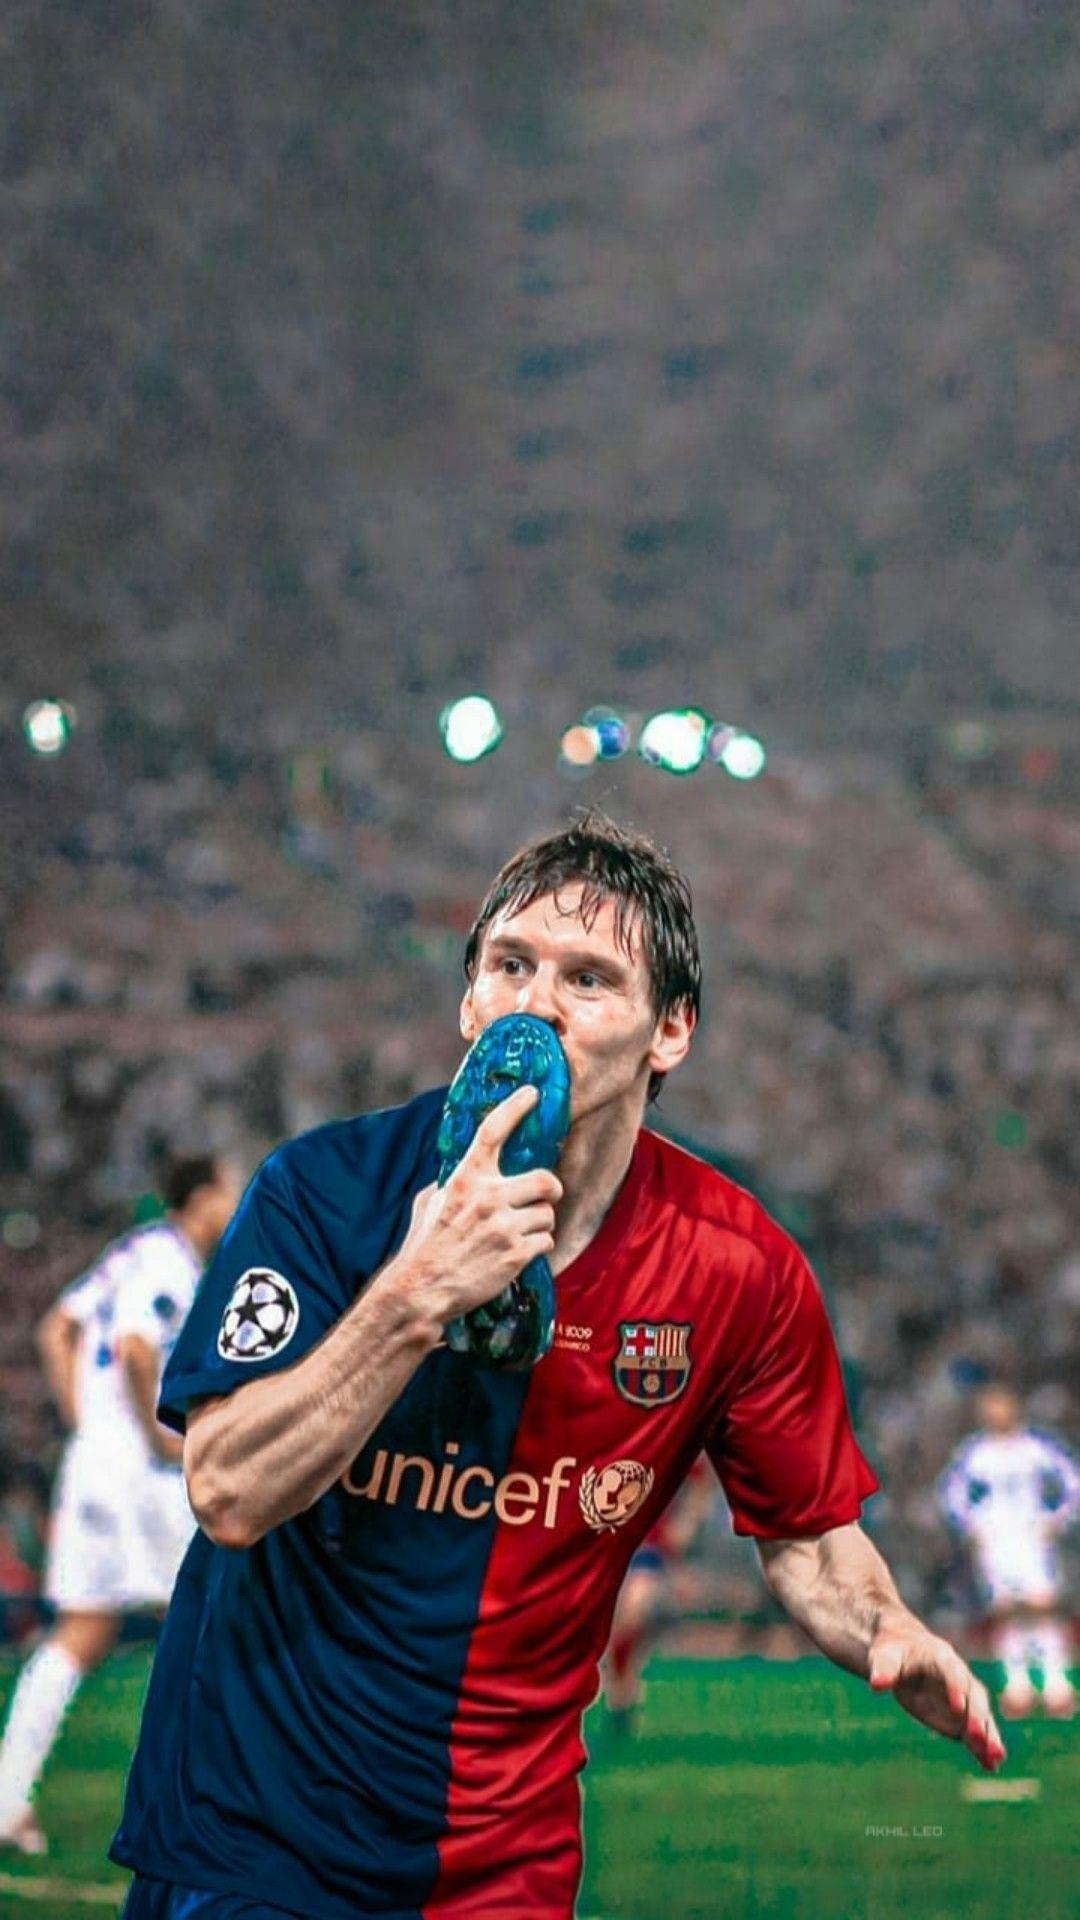 Tranh giấy nền Messi 2009 đẹp lung linh, chắc chắn sẽ đem lại cho bạn cảm giác hưng phấn và thoải mái. Hãy tưởng tượng mình đang thưởng thức những khoảnh khắc đáng nhớ của Messi trong năm đó trên màn hình điện thoại hay máy tính của mình. Đừng bỏ lỡ cơ hội này, hãy cùng khám phá thế giới Messi 2009 ngay thôi!